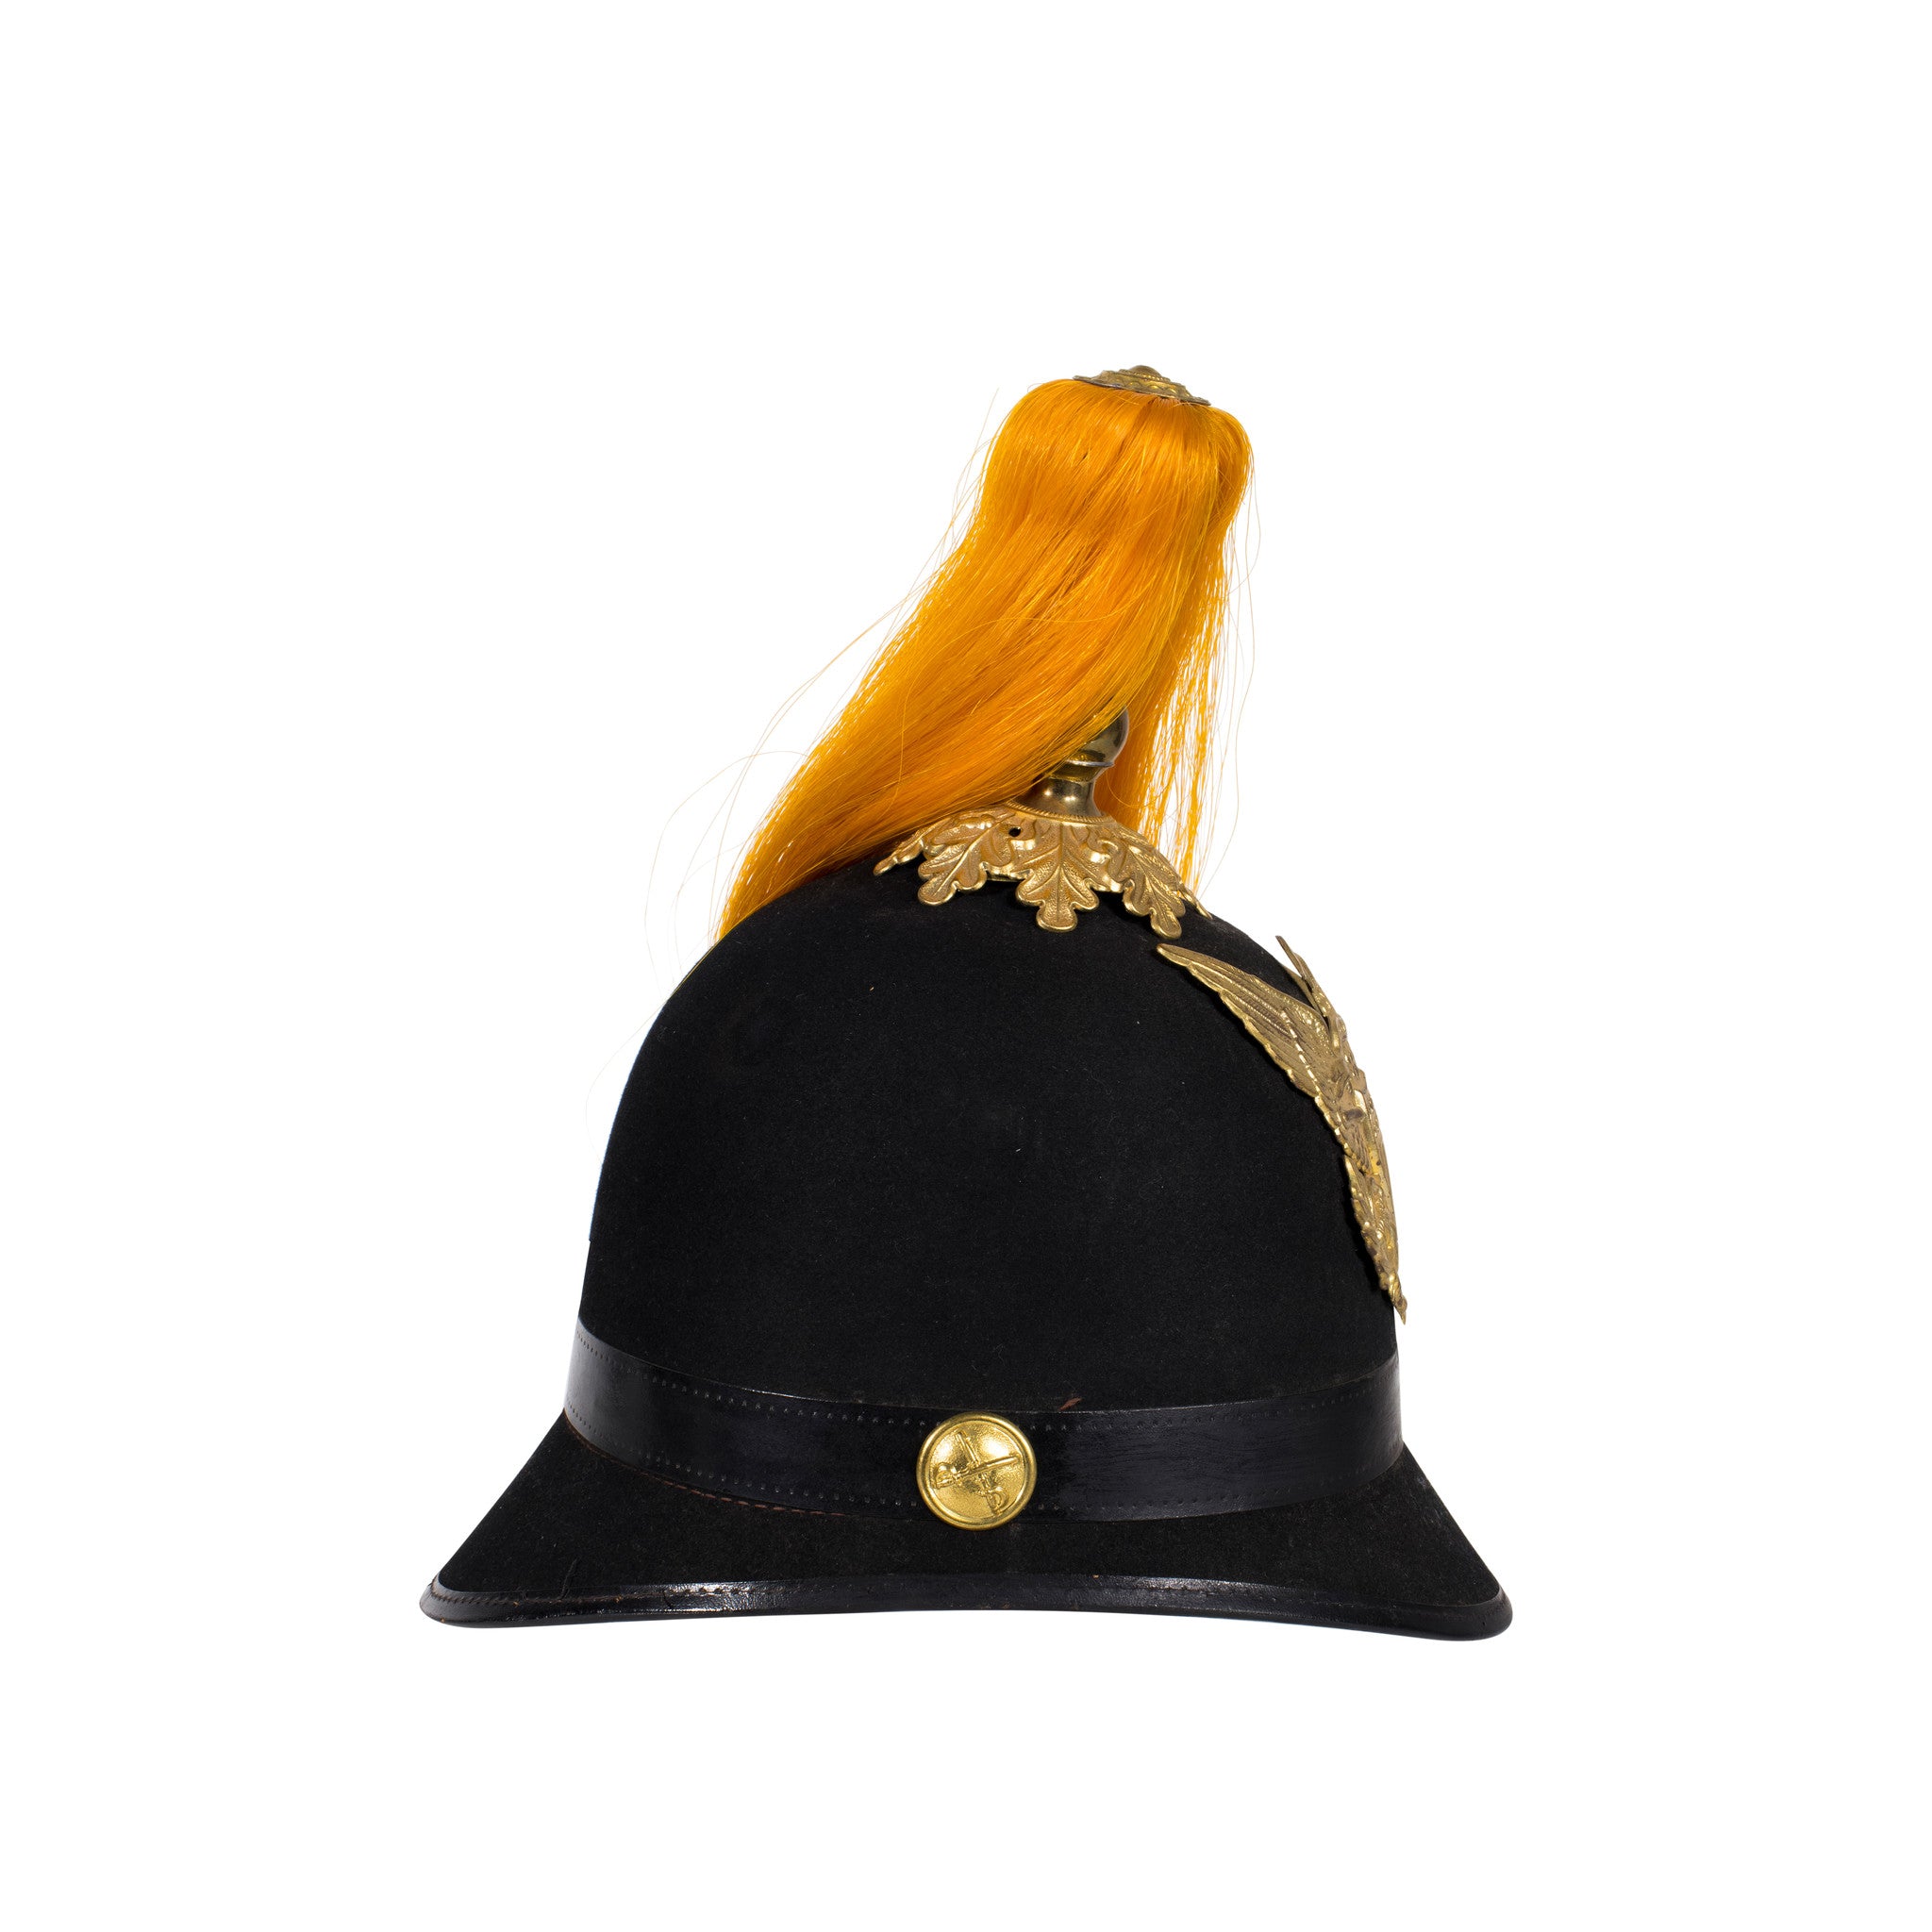 Indian War Period Cavalry Helmet